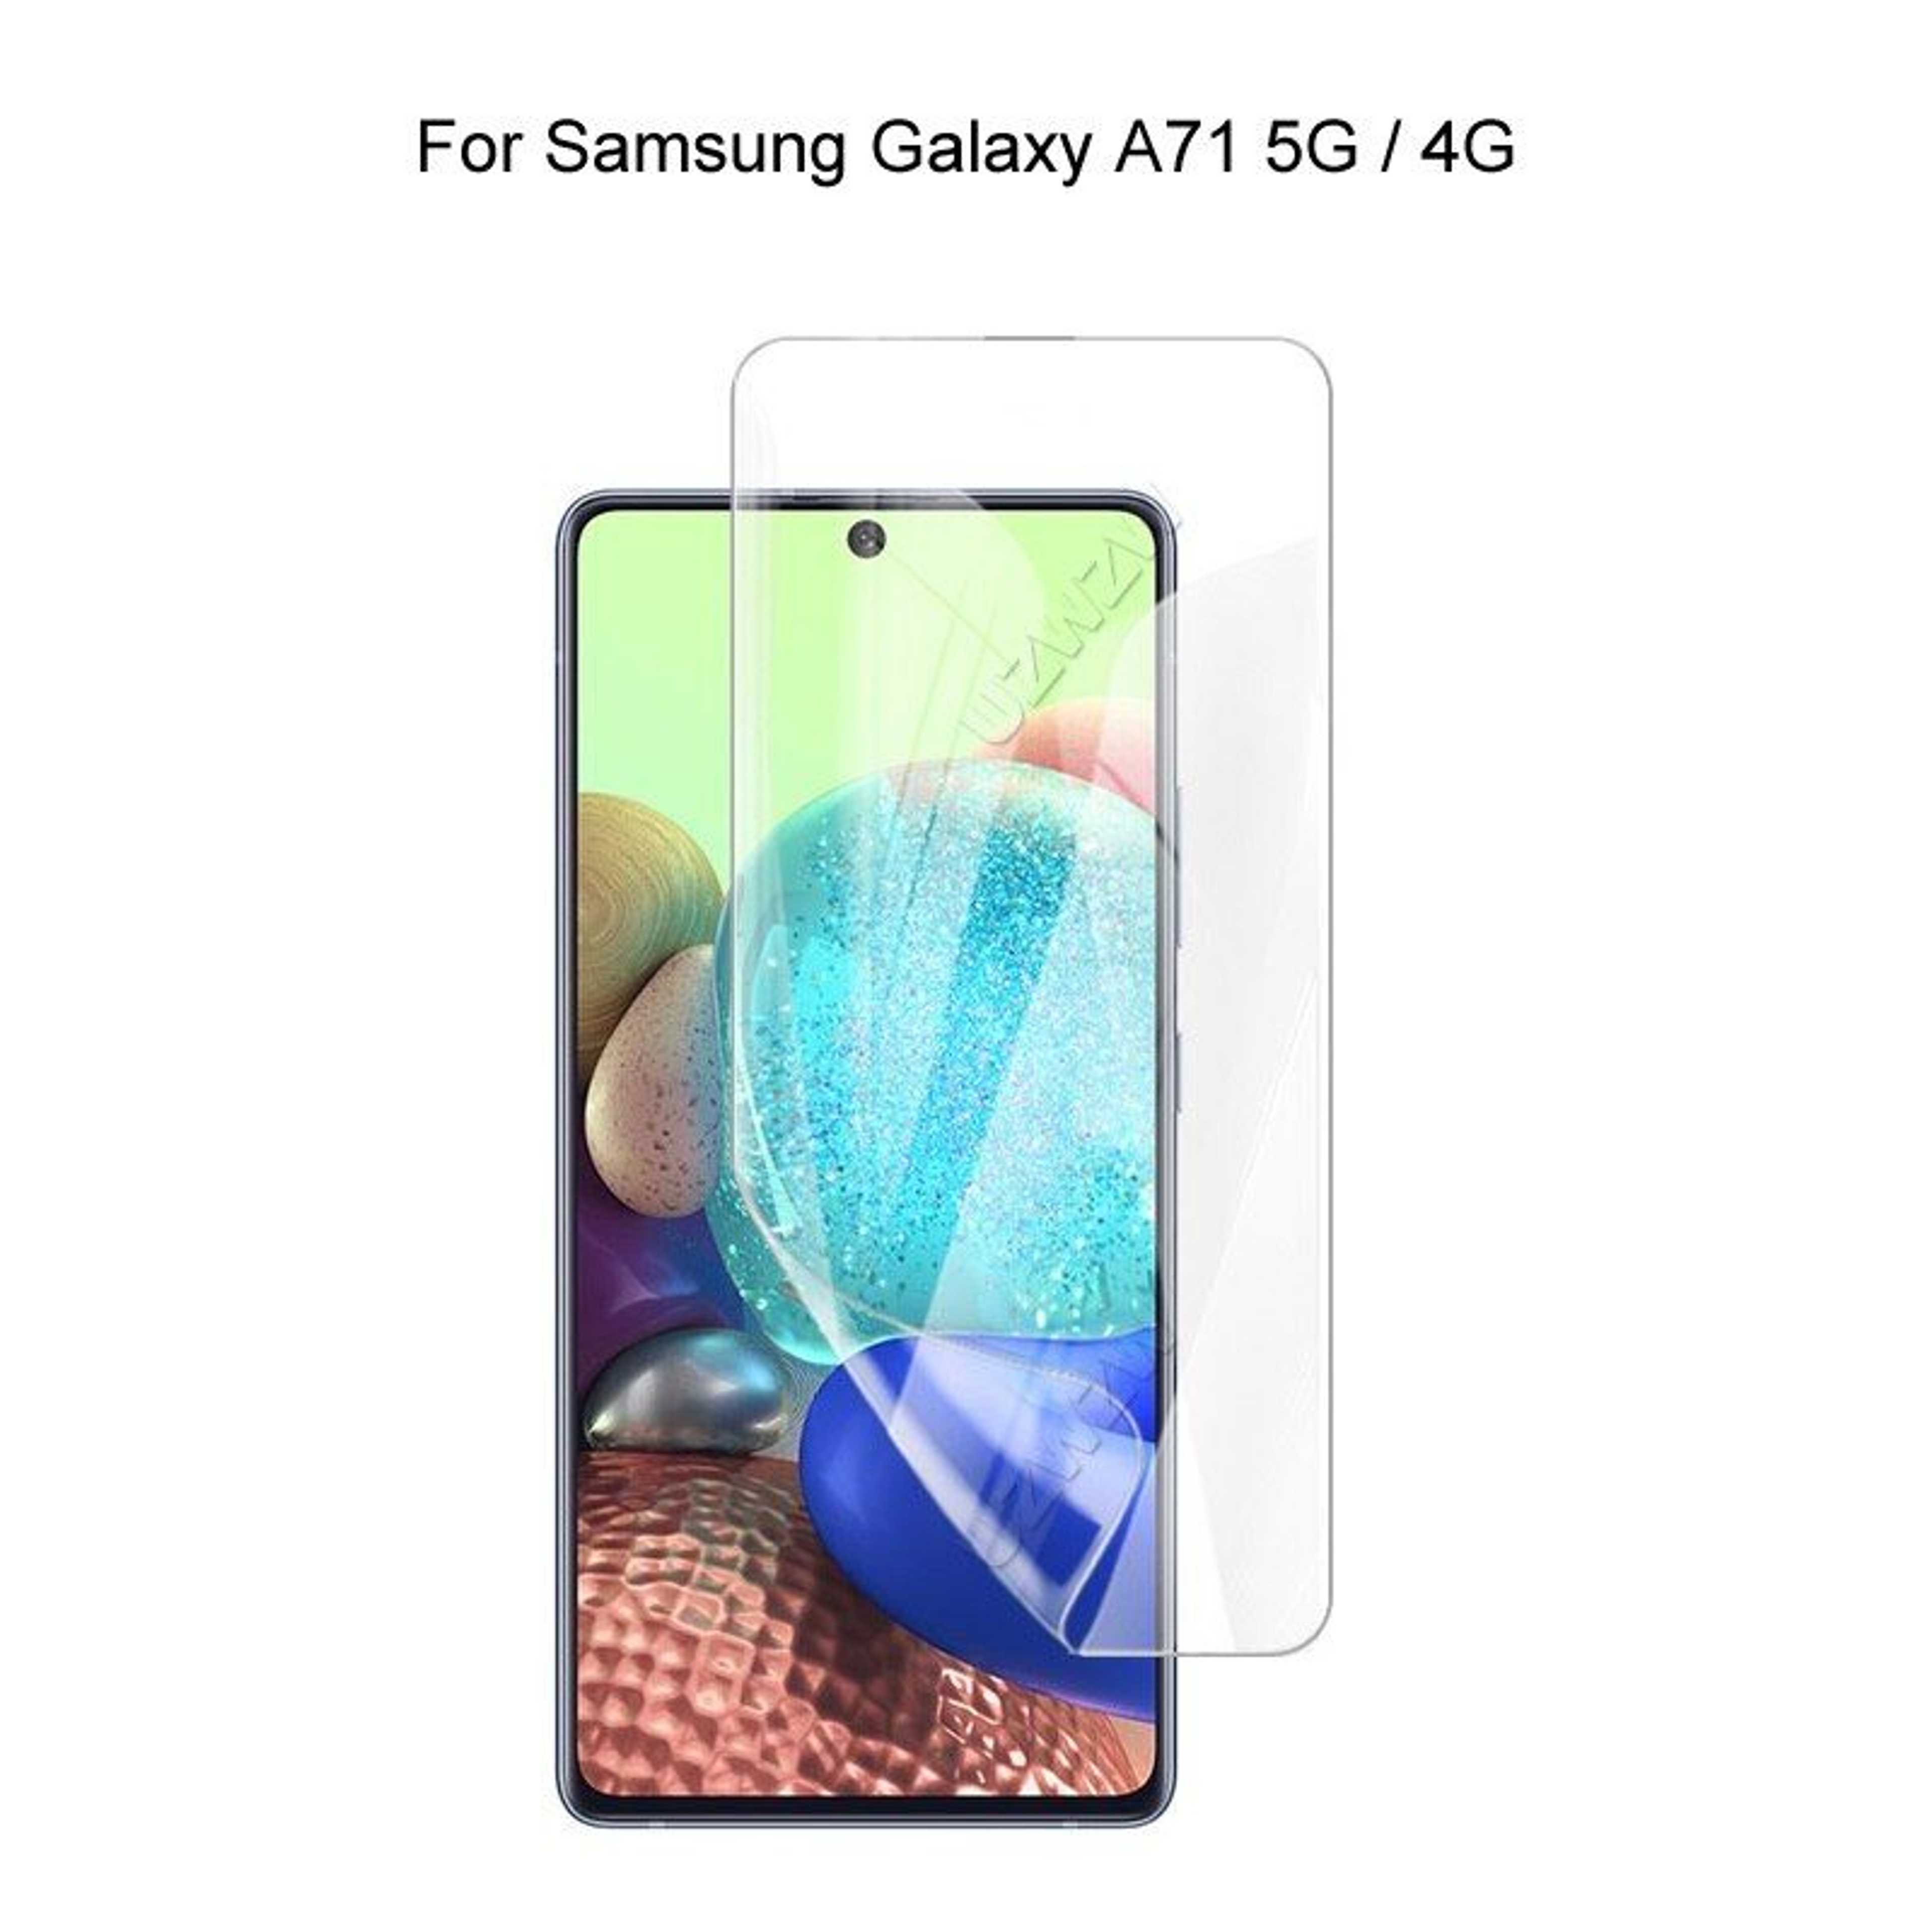 Samsung Galaxy A71 Screen Jelly Protector Hydrogel Film